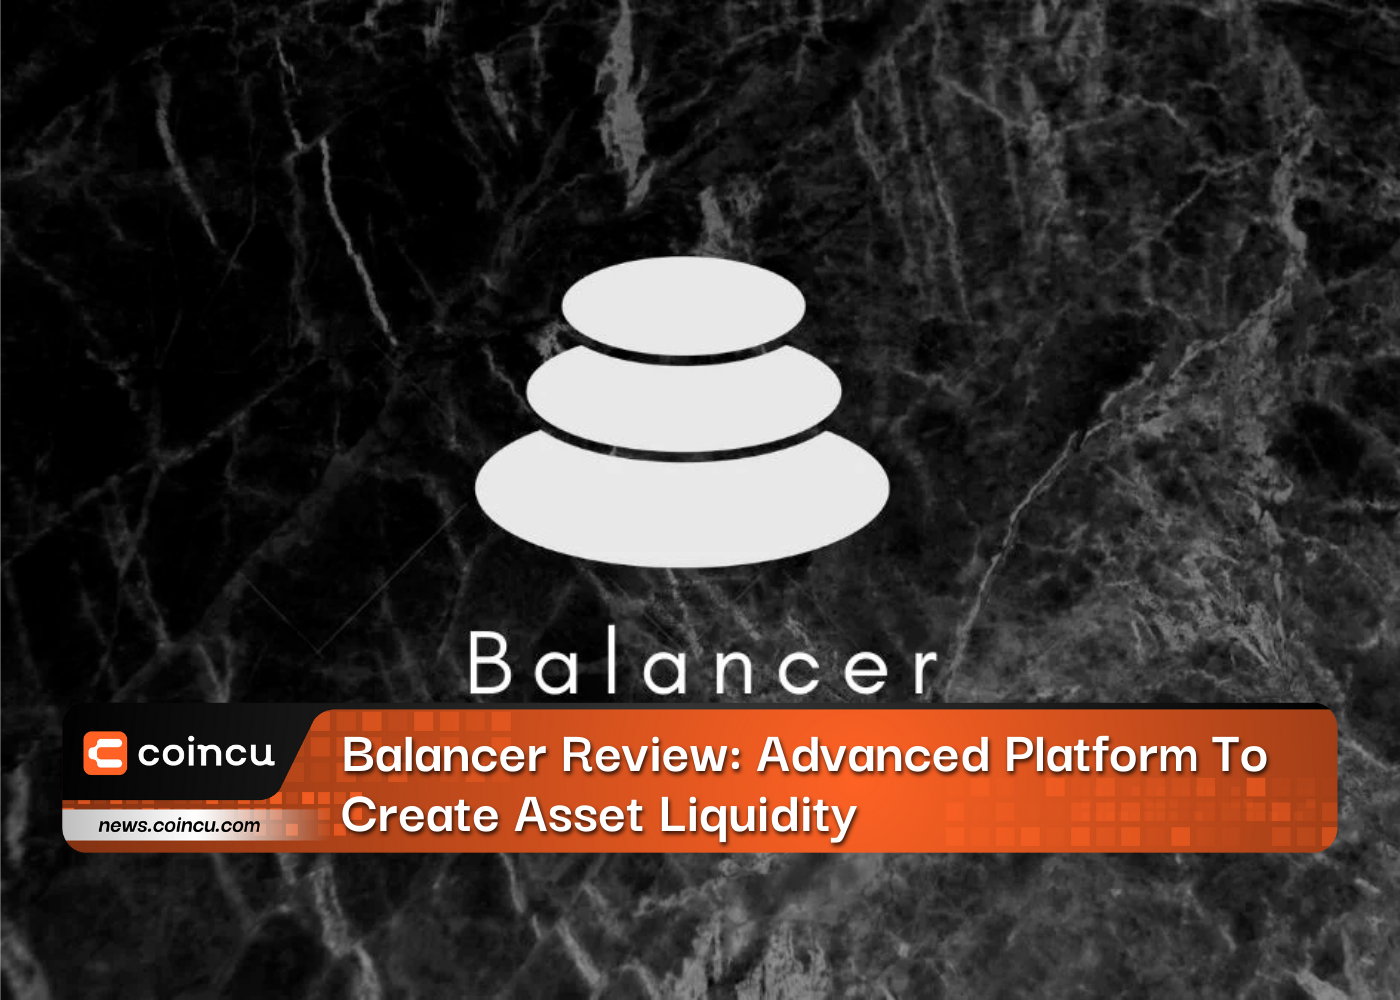 Balancer Review: Advanced Platform To Create Asset Liquidity